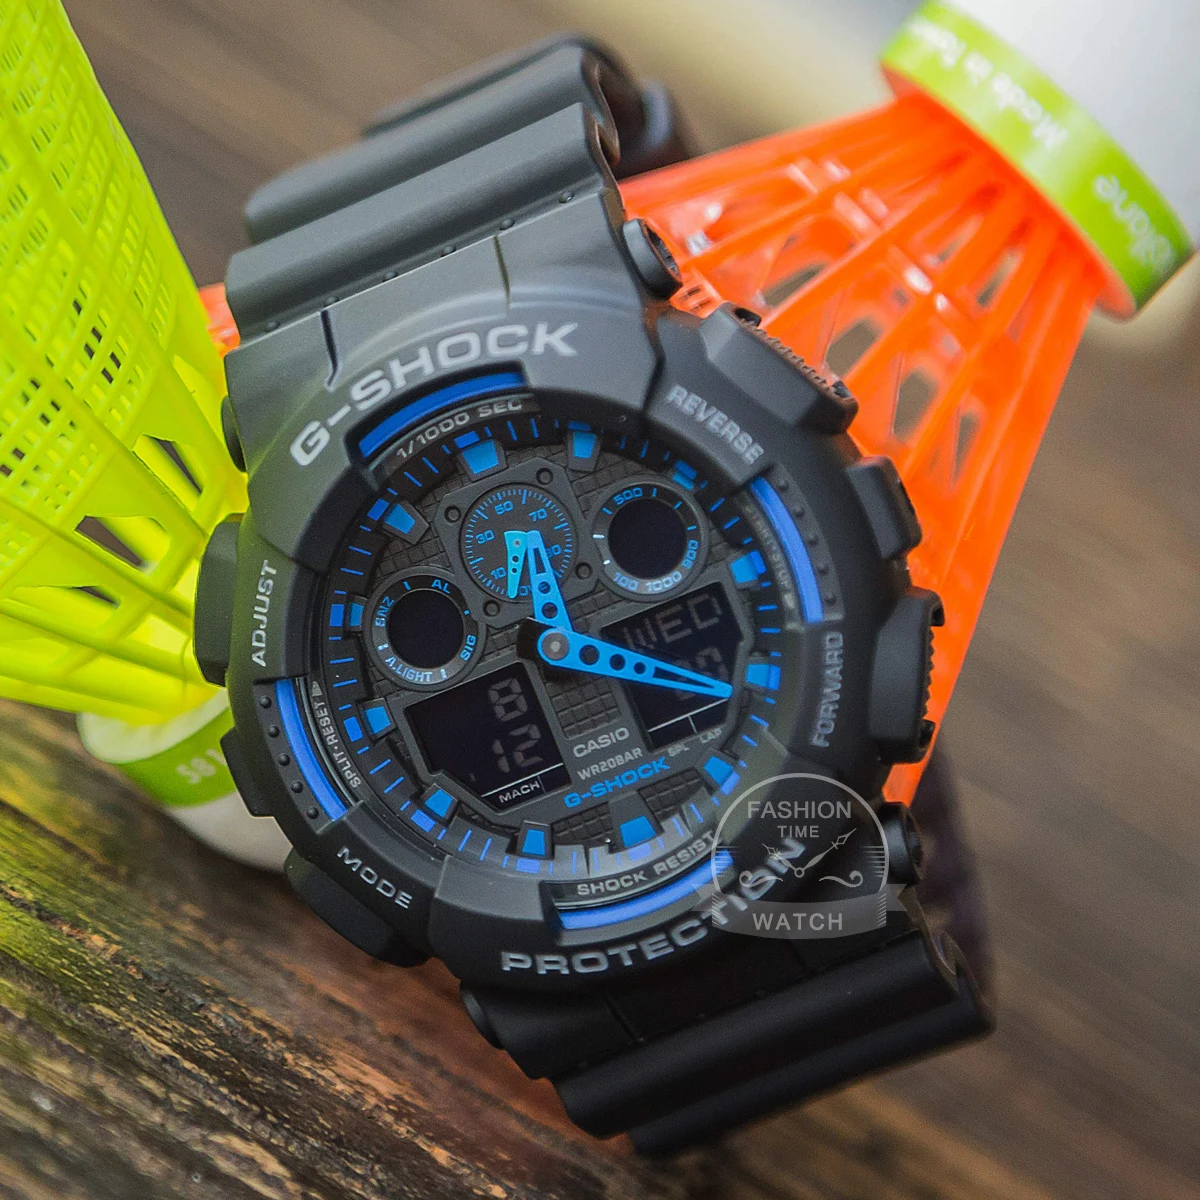 Casio Men G Shock Quartz Resin Sport Watch  G Shock Watches Solar Powered  - Casio - Aliexpress